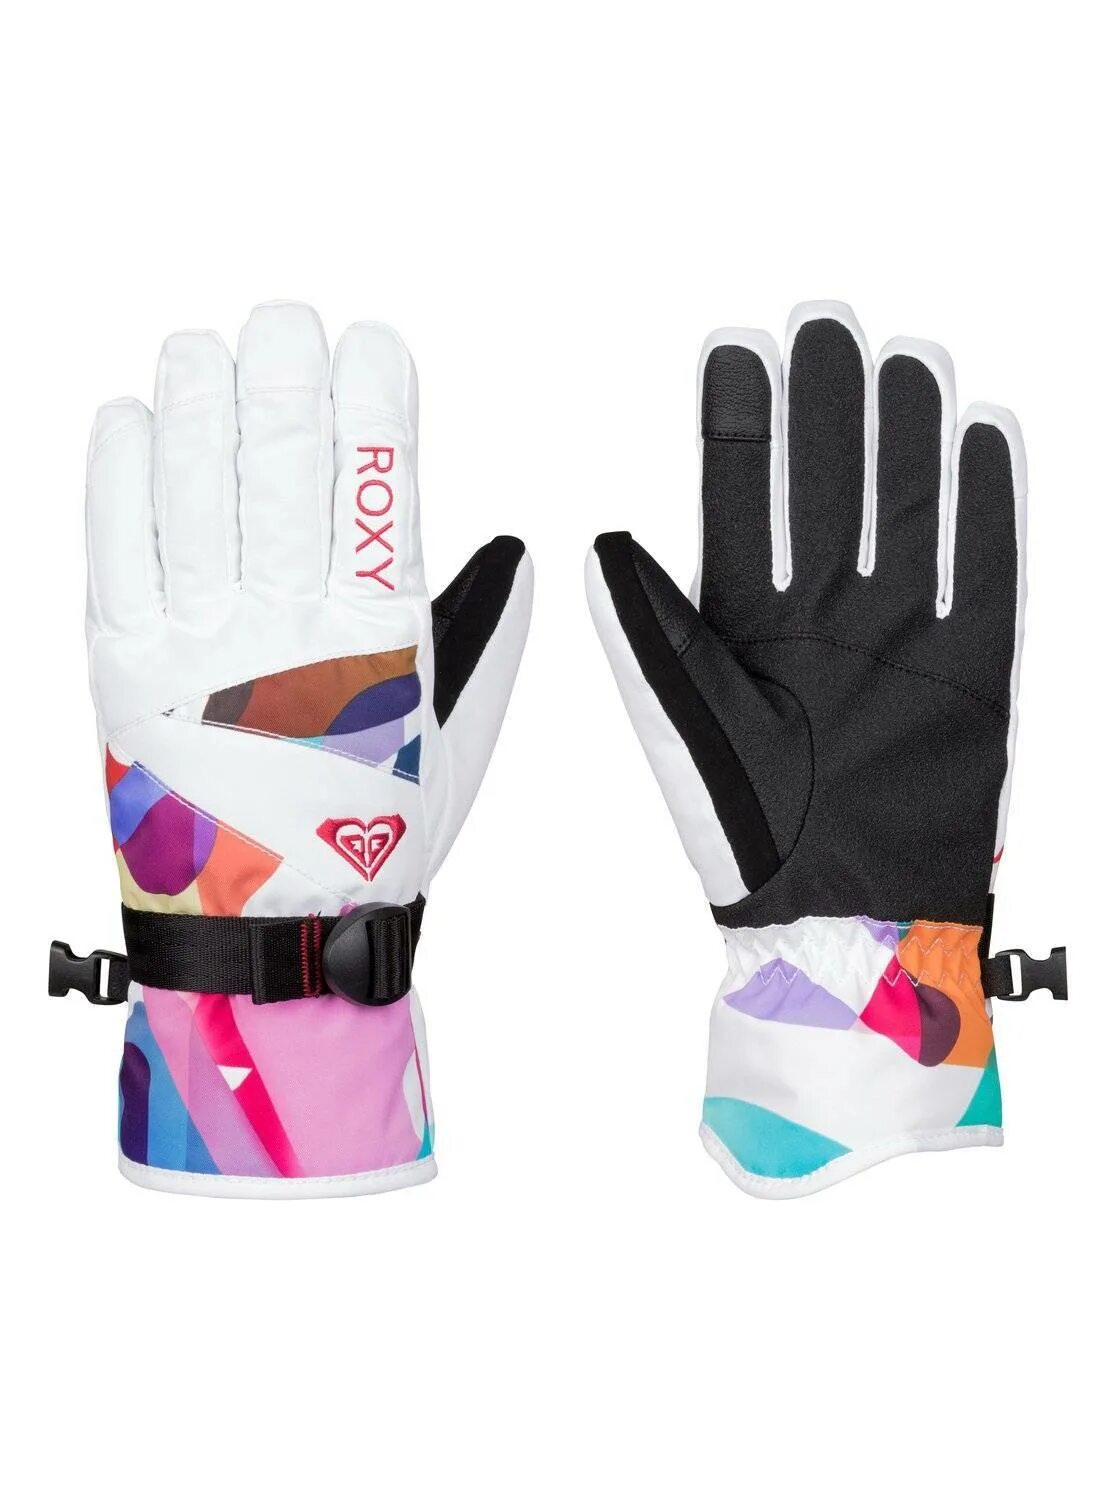 Перчатки сноубордические roxy купить. Перчатки Roxy Jetty Gloves белые. Roxy перчатки сноубордические женские. Roxy Jetty g Gloves. Горнолыжные перчатки Quicksilver.